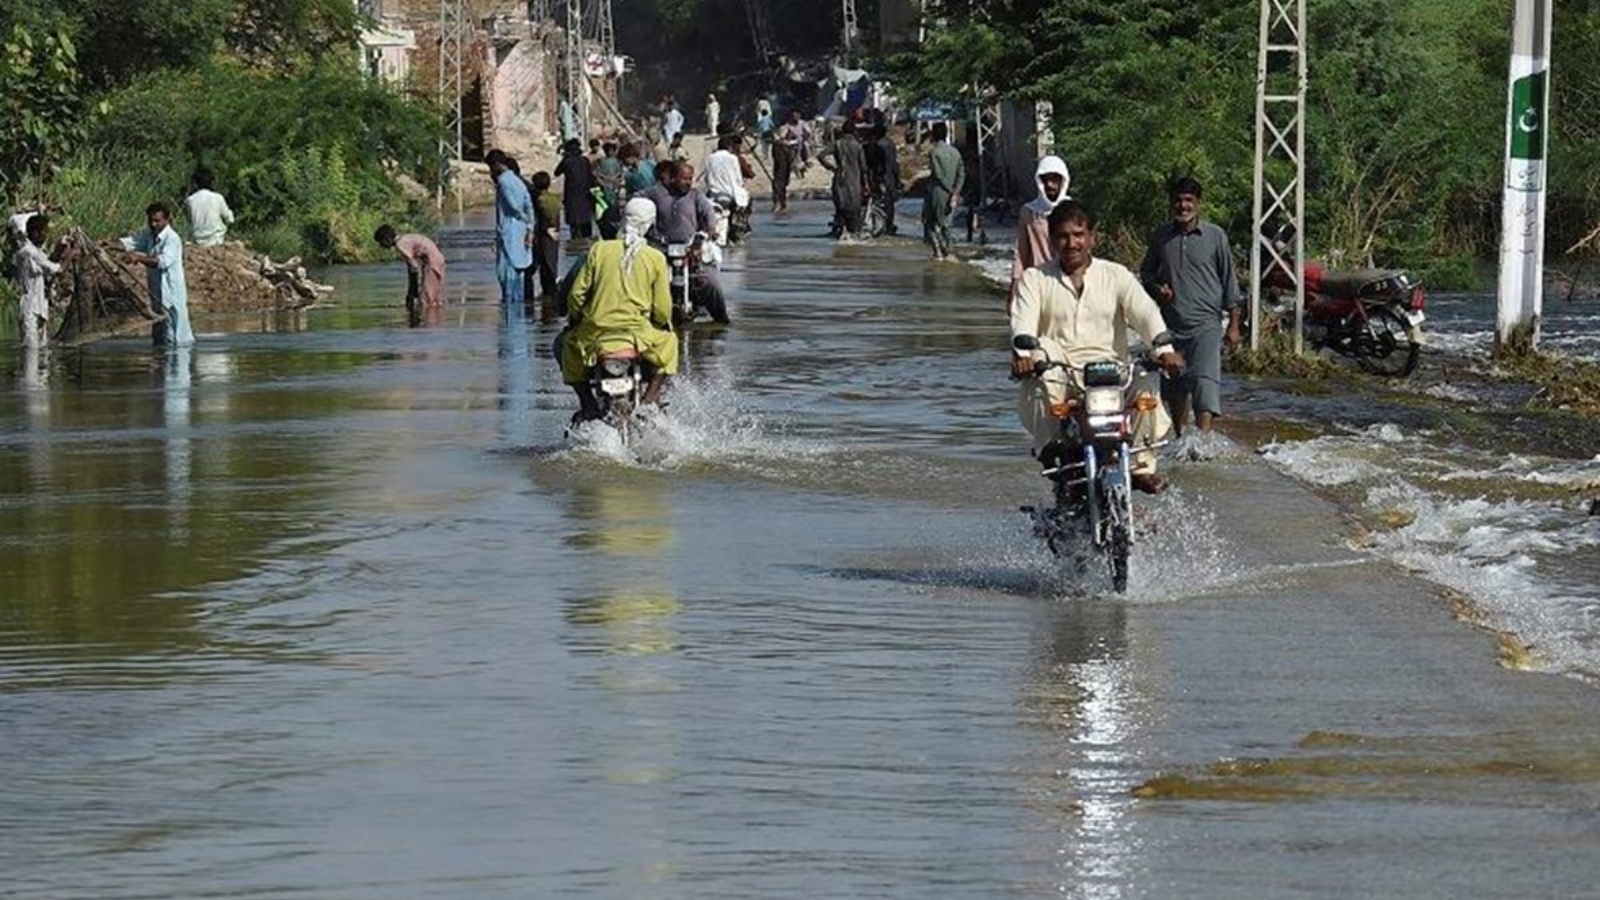 يشق السكان طريقهم على طول شارع غمرته المياه بعد هطول أمطار موسمية غزيرة في باكستان